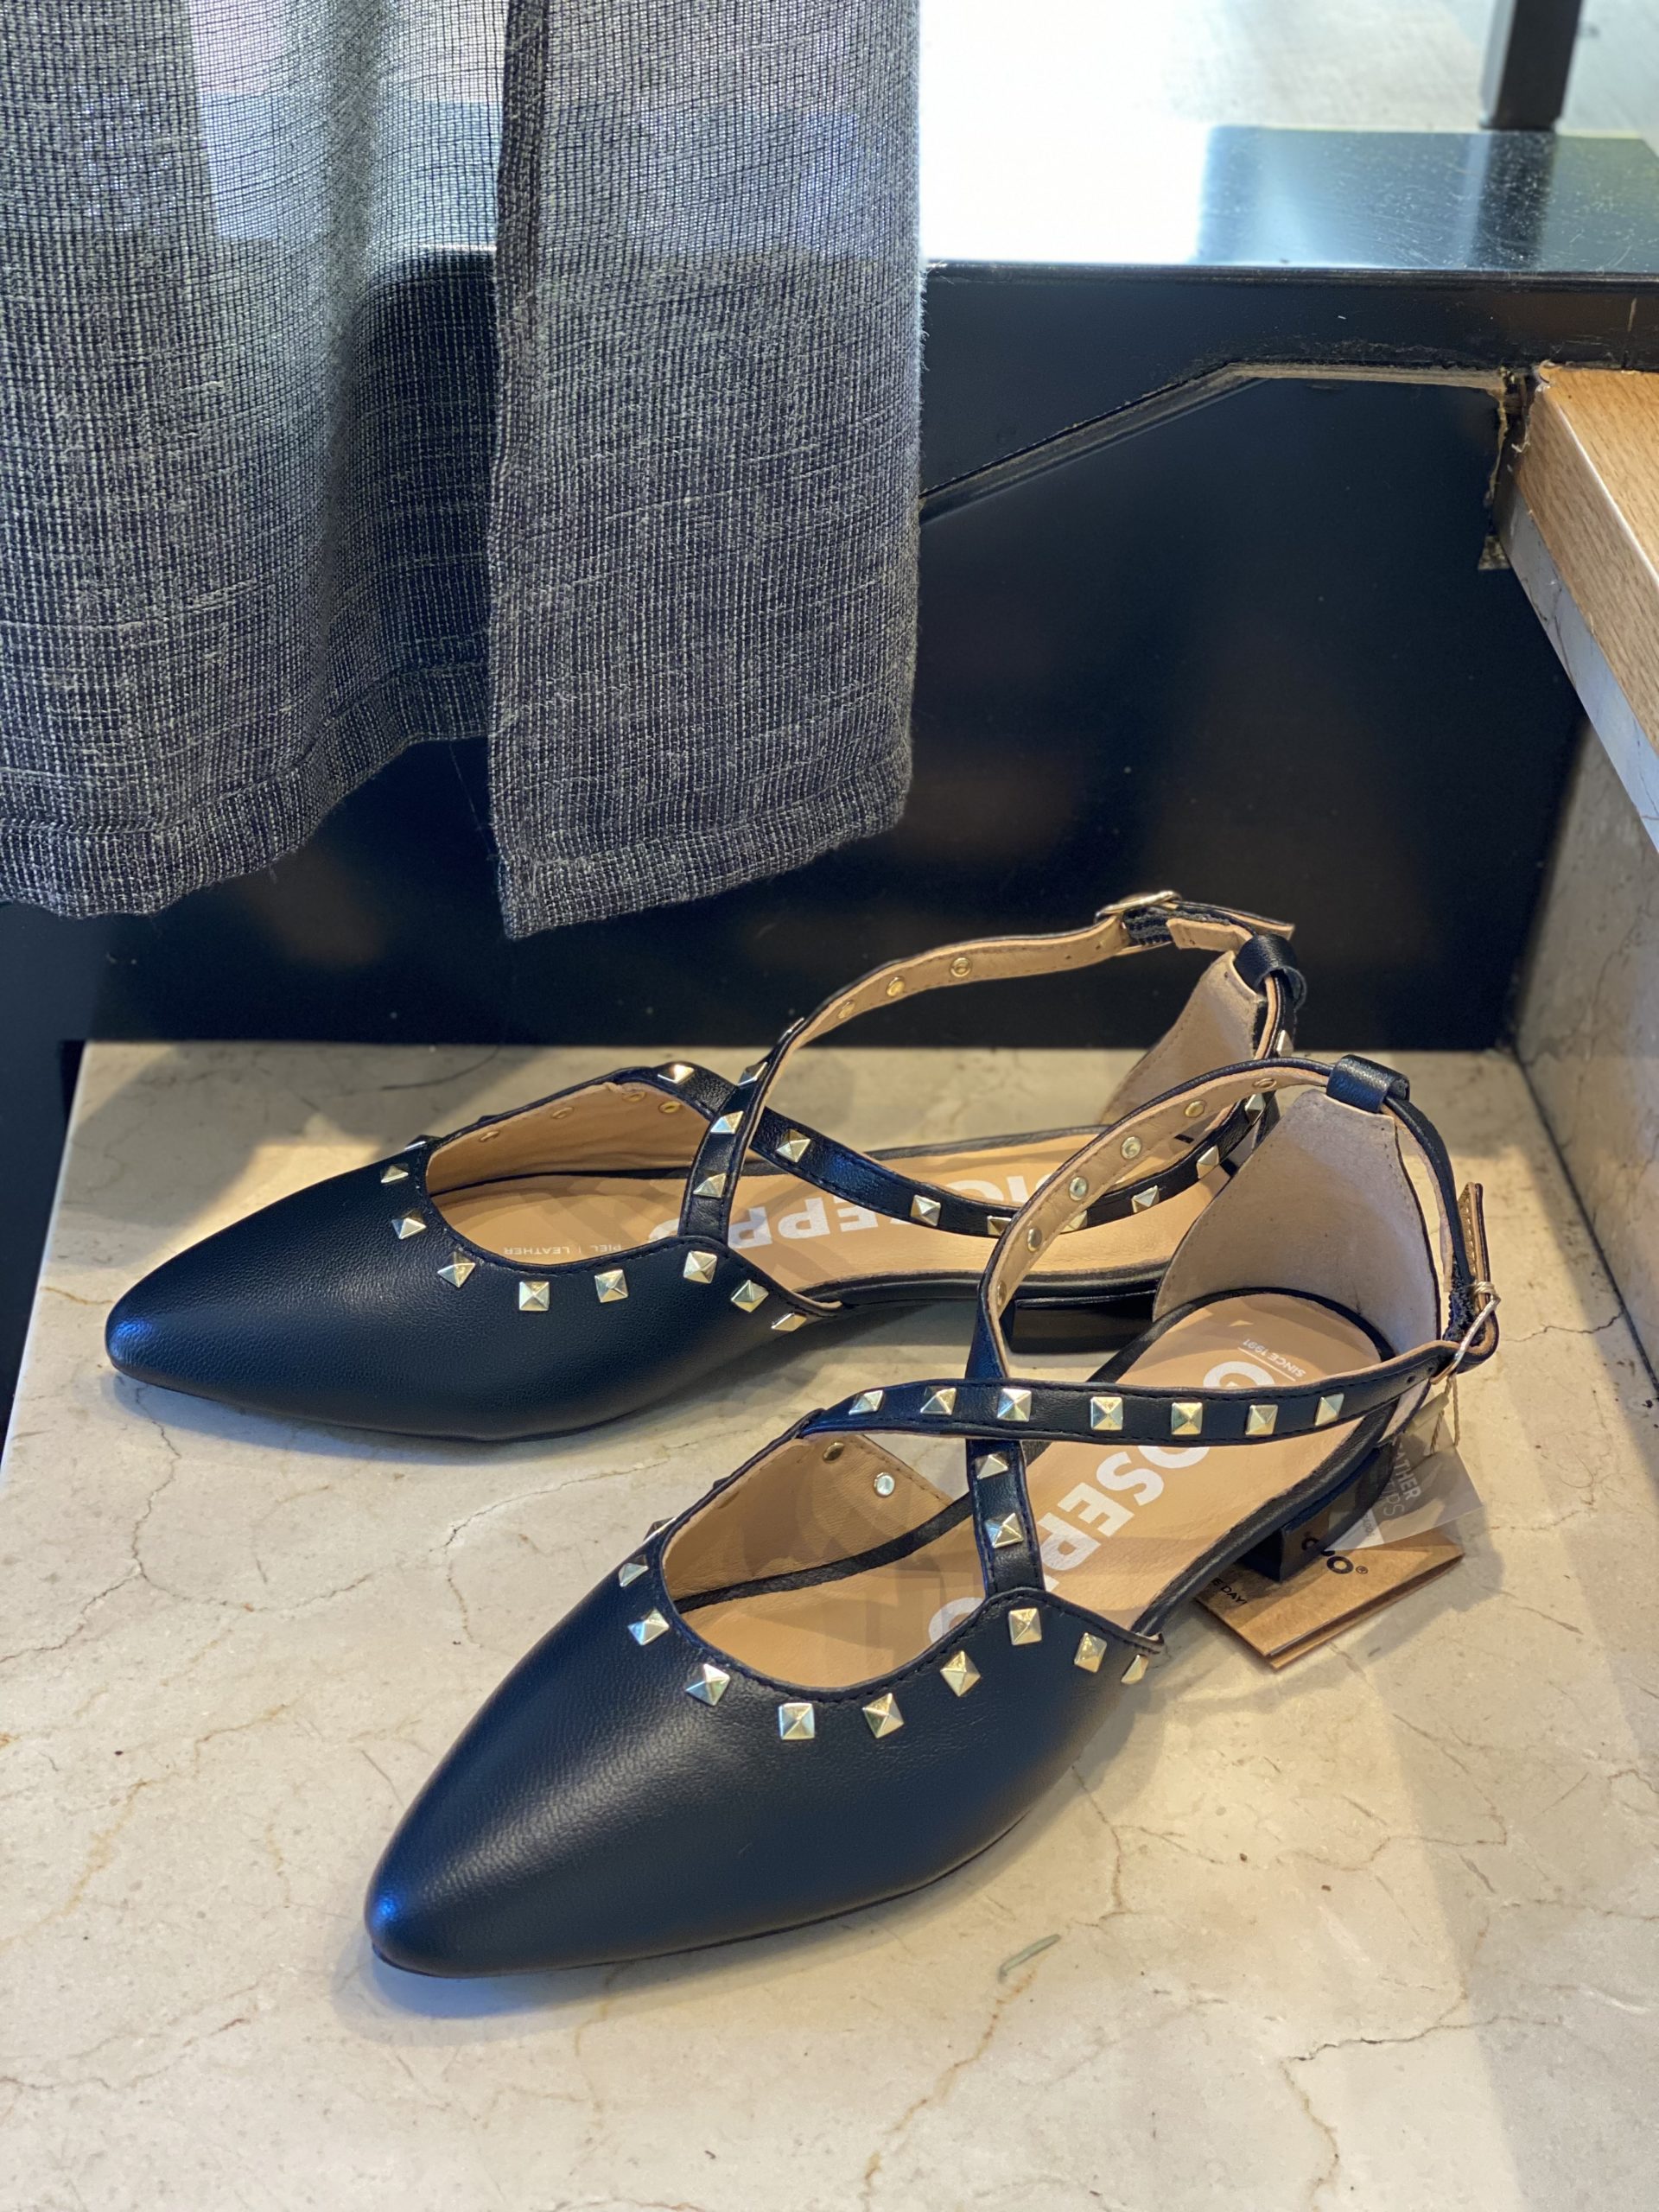 Zapato modelo Garcon de Gioseppo en piel metalizada color negro con tachuelas.